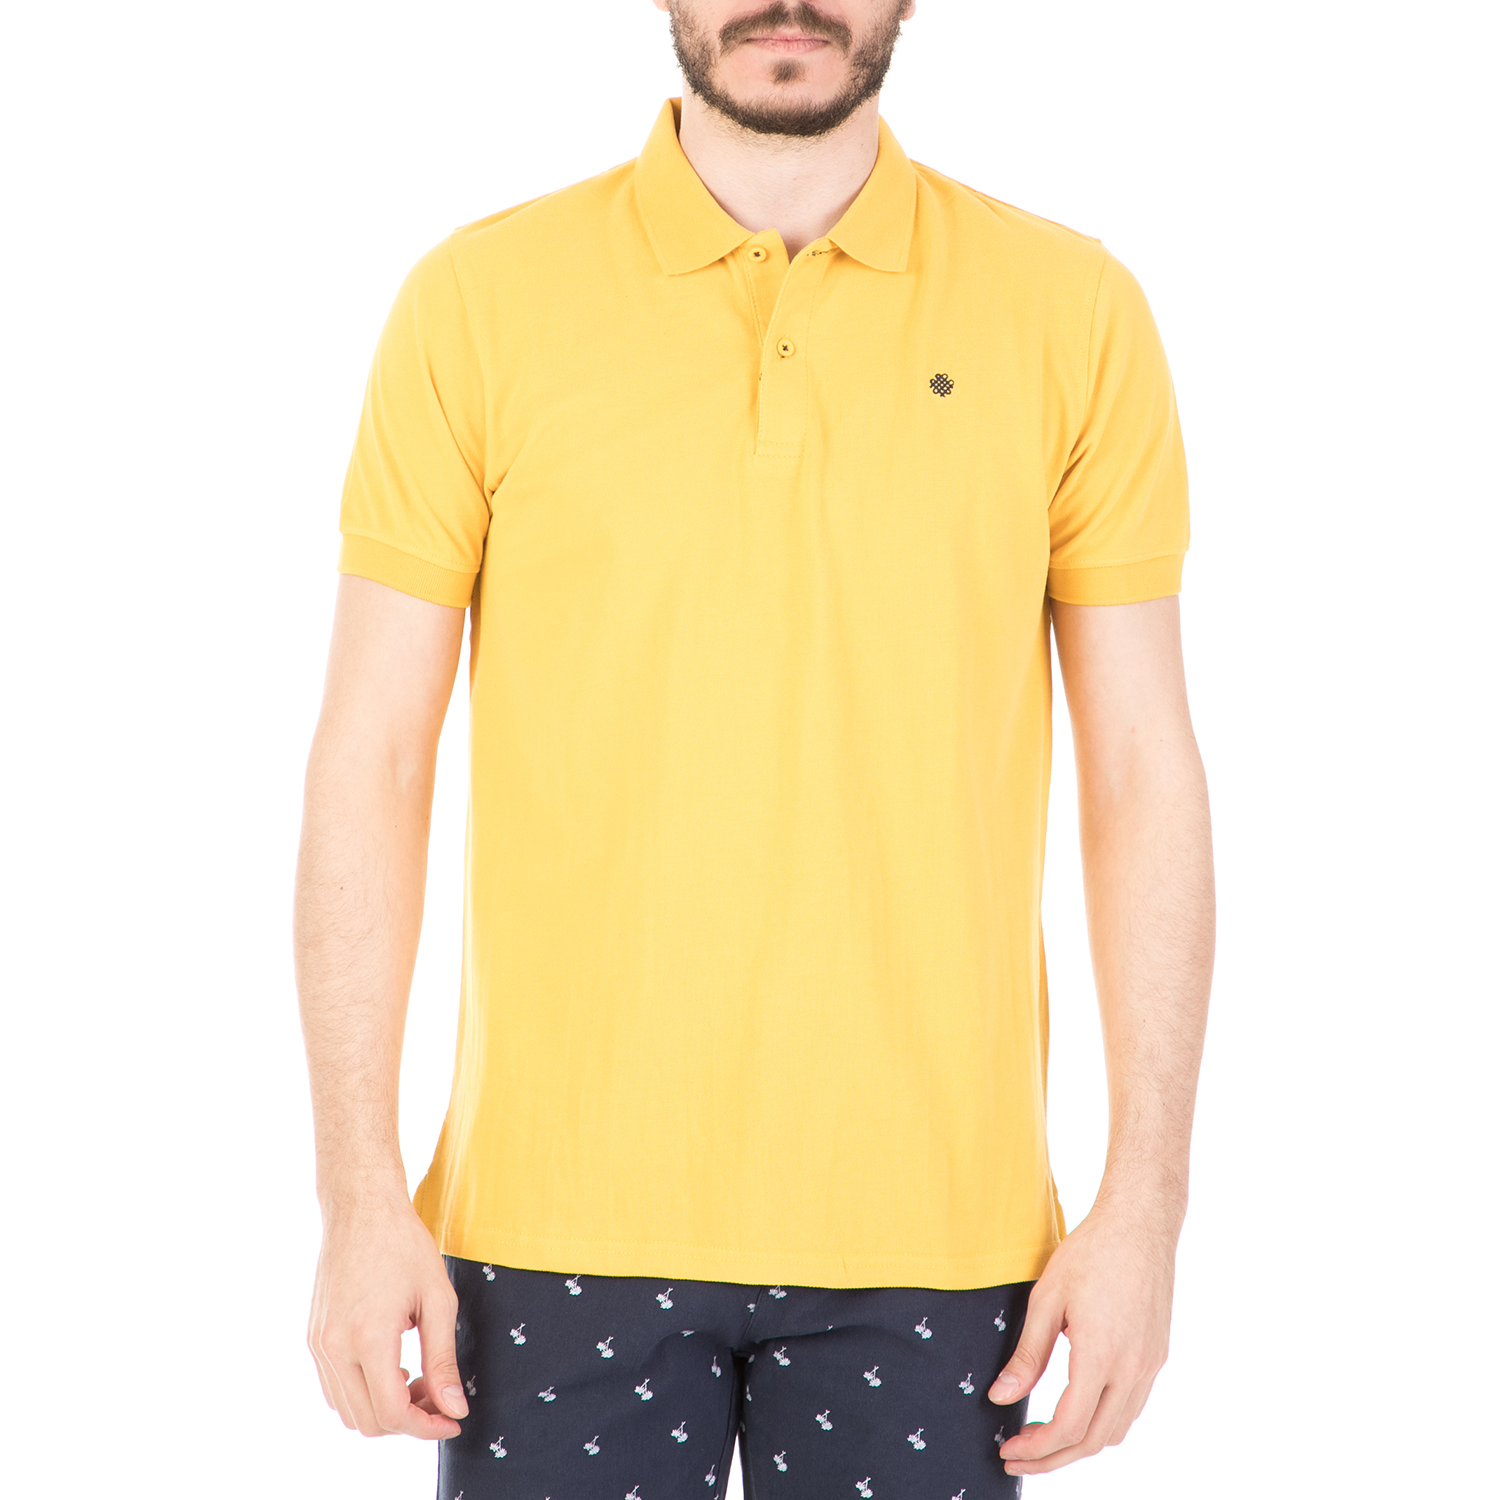 DORS - Ανδρική μπλούζα DORS κίτρινη